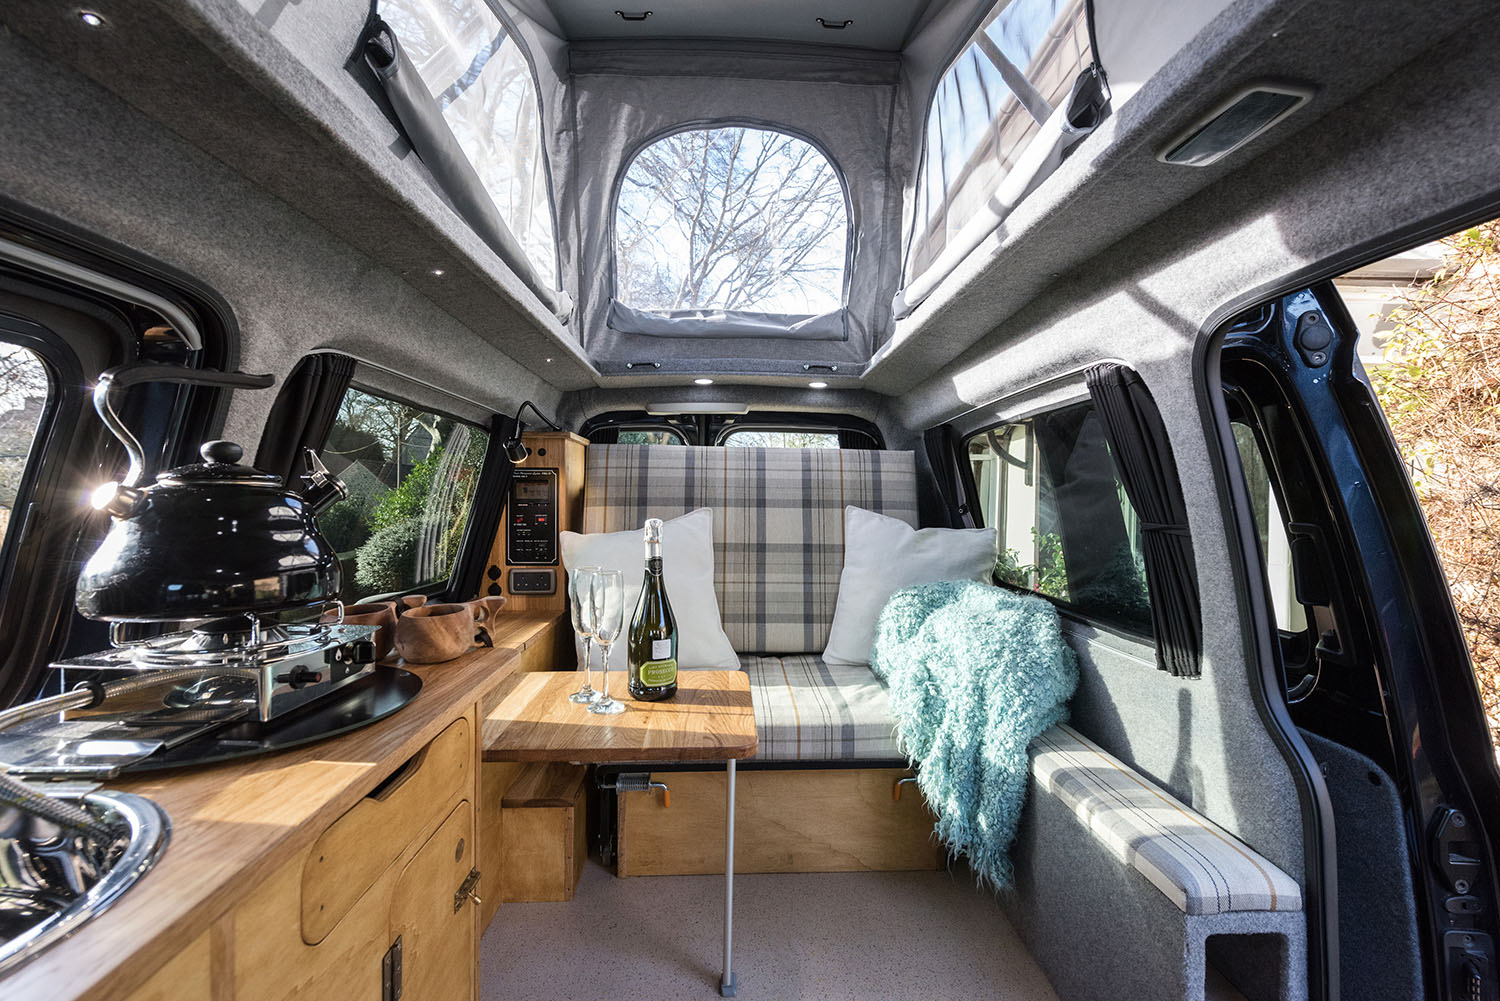 VW CADDY - small camper vans 